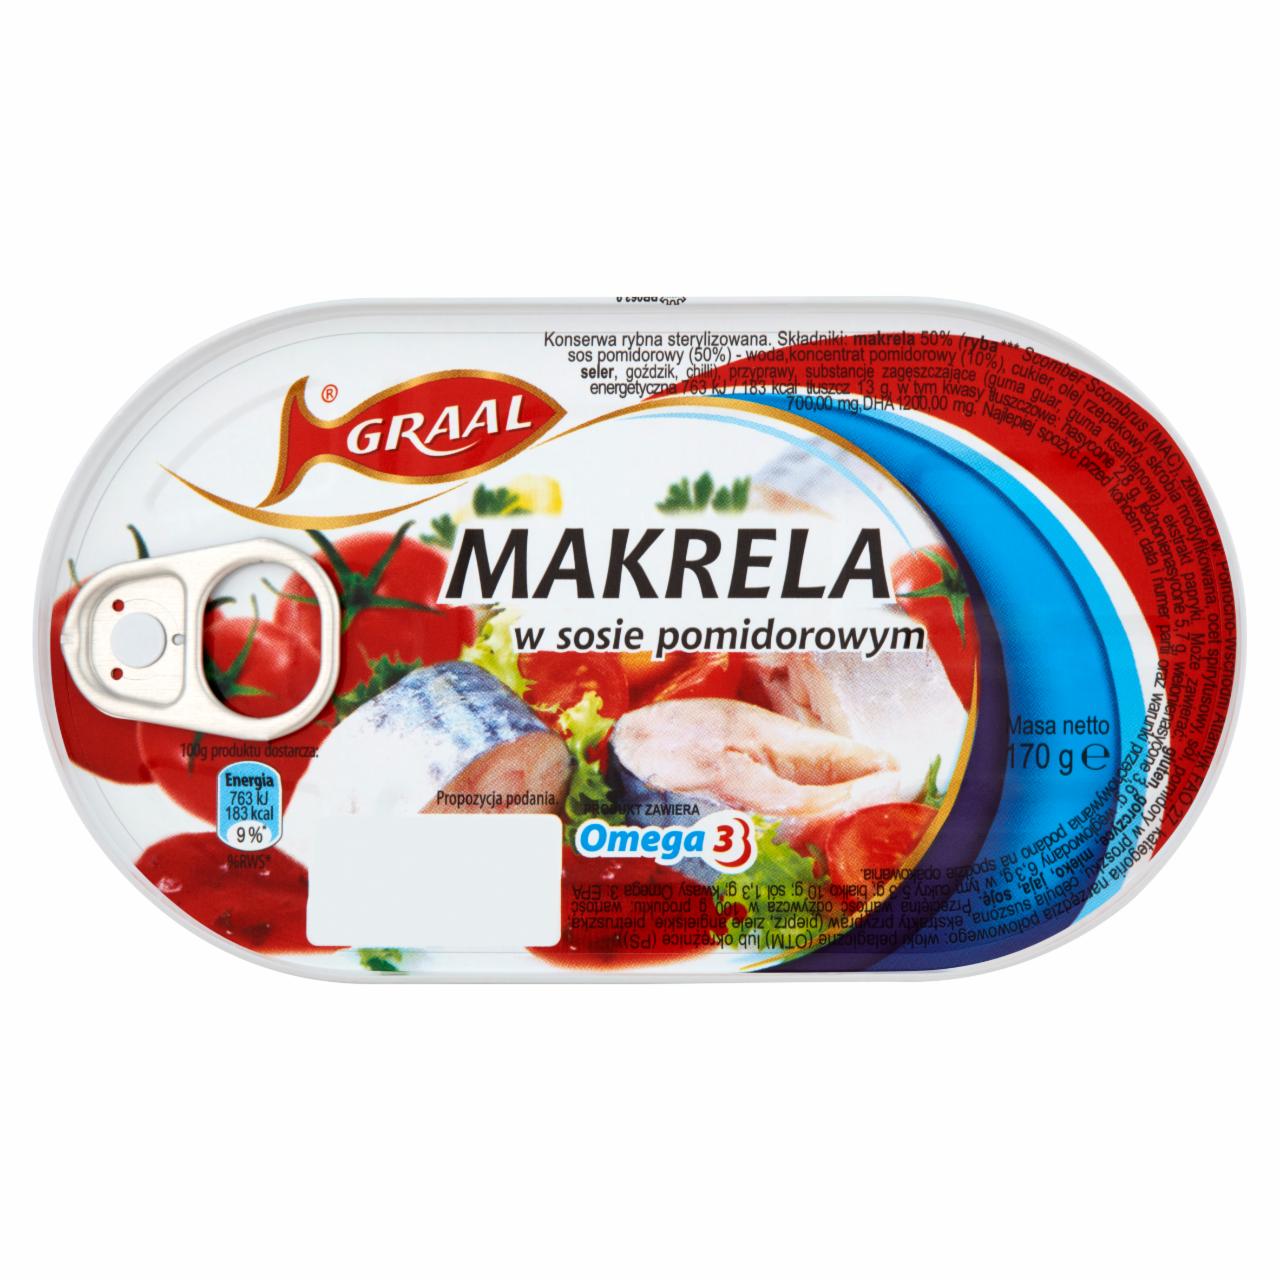 Zdjęcia - GRAAL Makrela w sosie pomidorowym 170 g